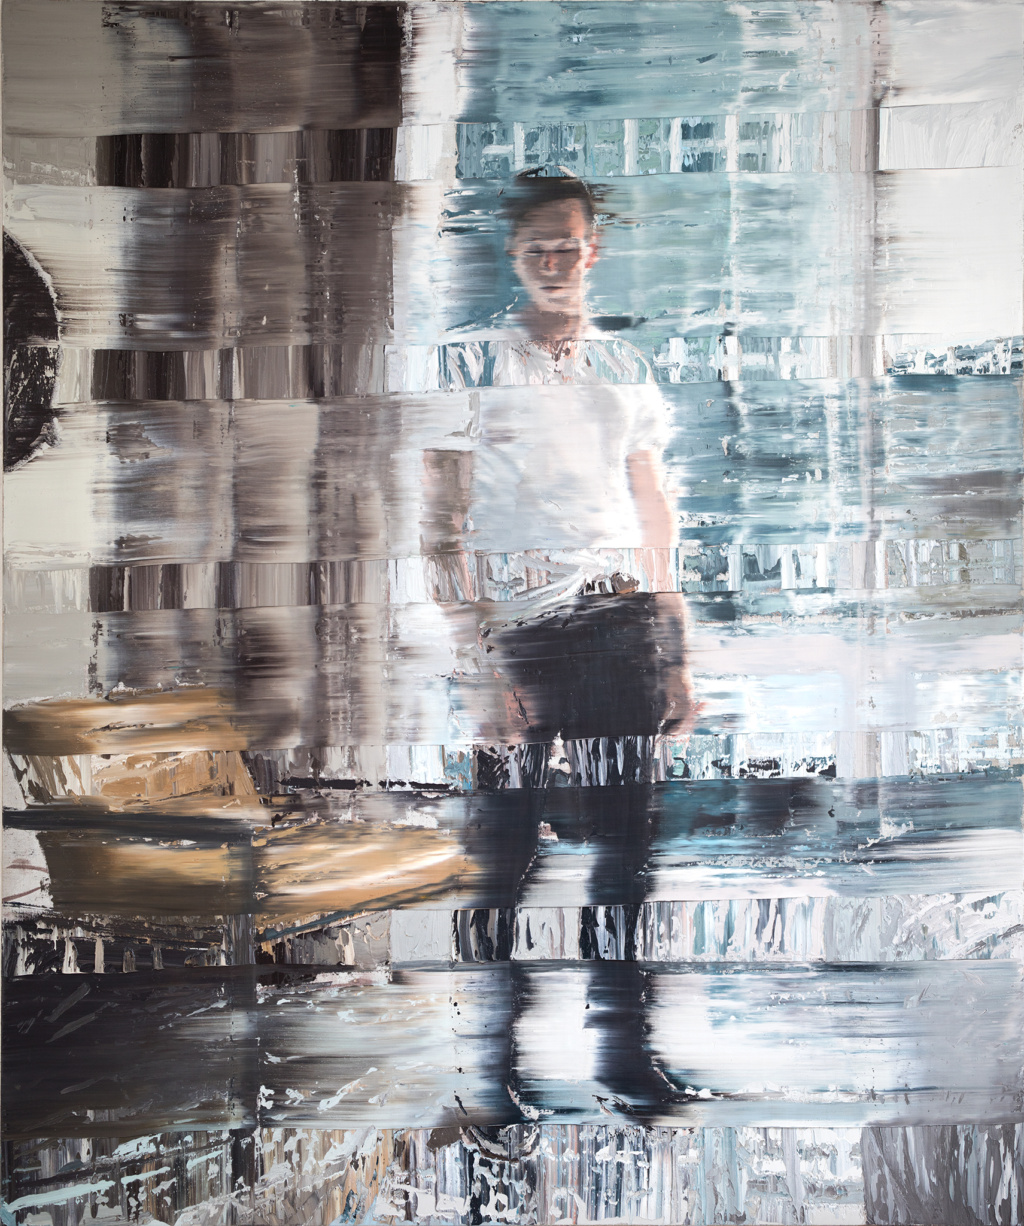 Andy Denzler, Kurt, 57th Street, 2016
Oil on Canvas
180 x 150 cm